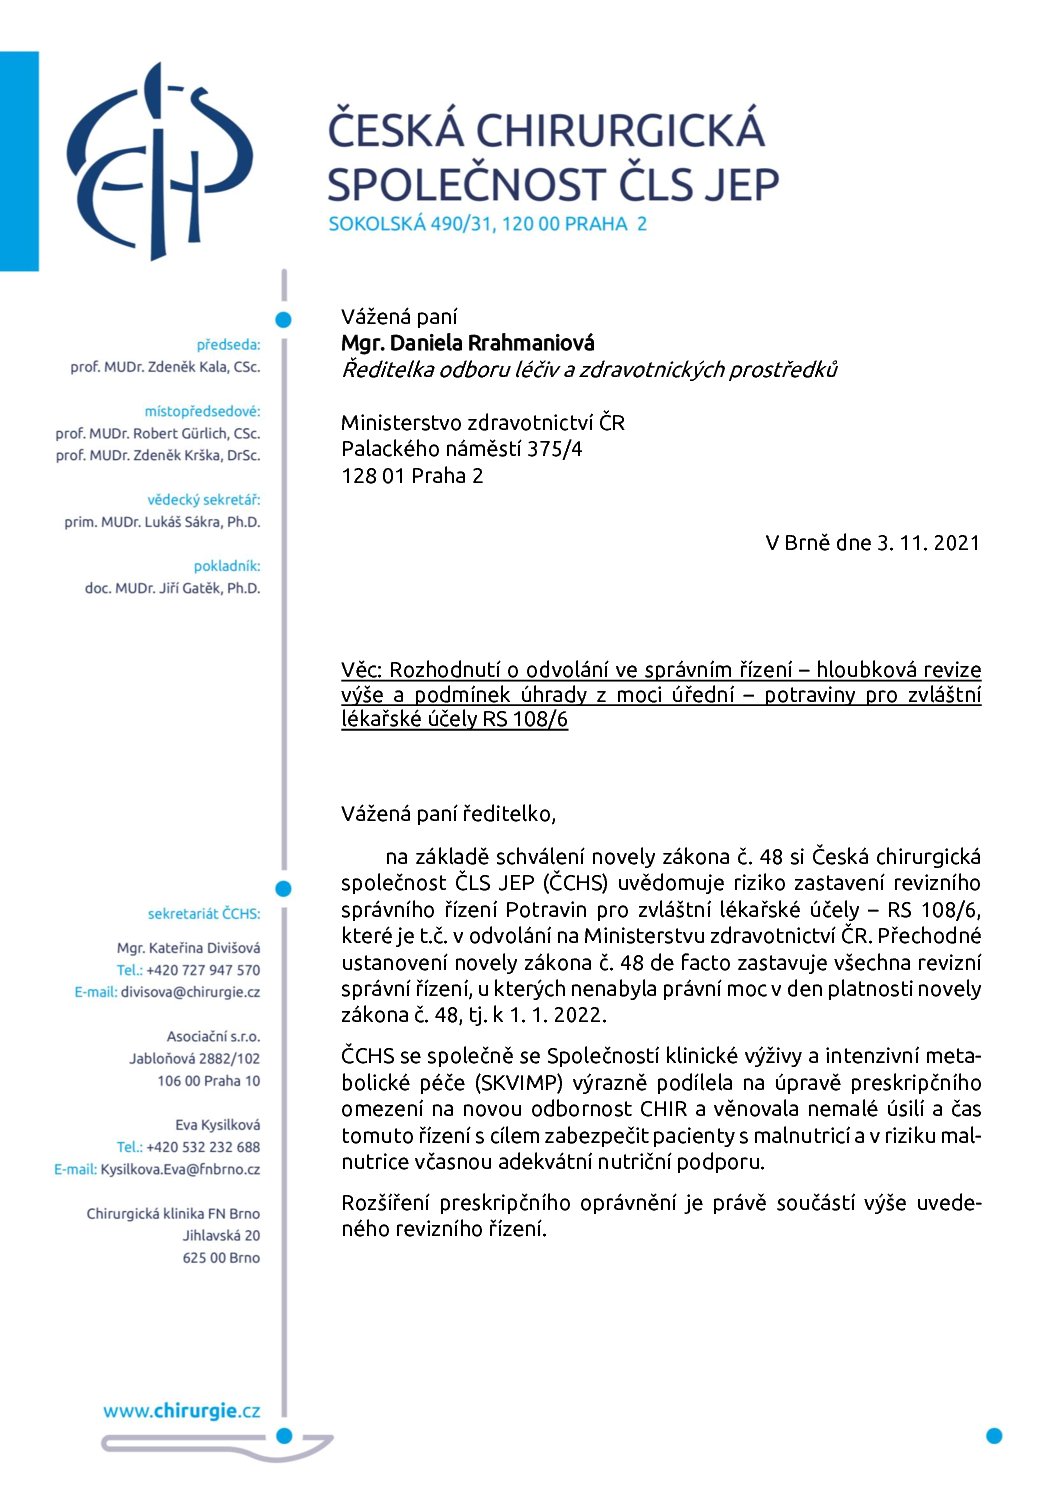 Stanovisko výboru ČCHS ČLS JEP k možnosti preskripce sippingu chirurgem (3. 11. 2021)